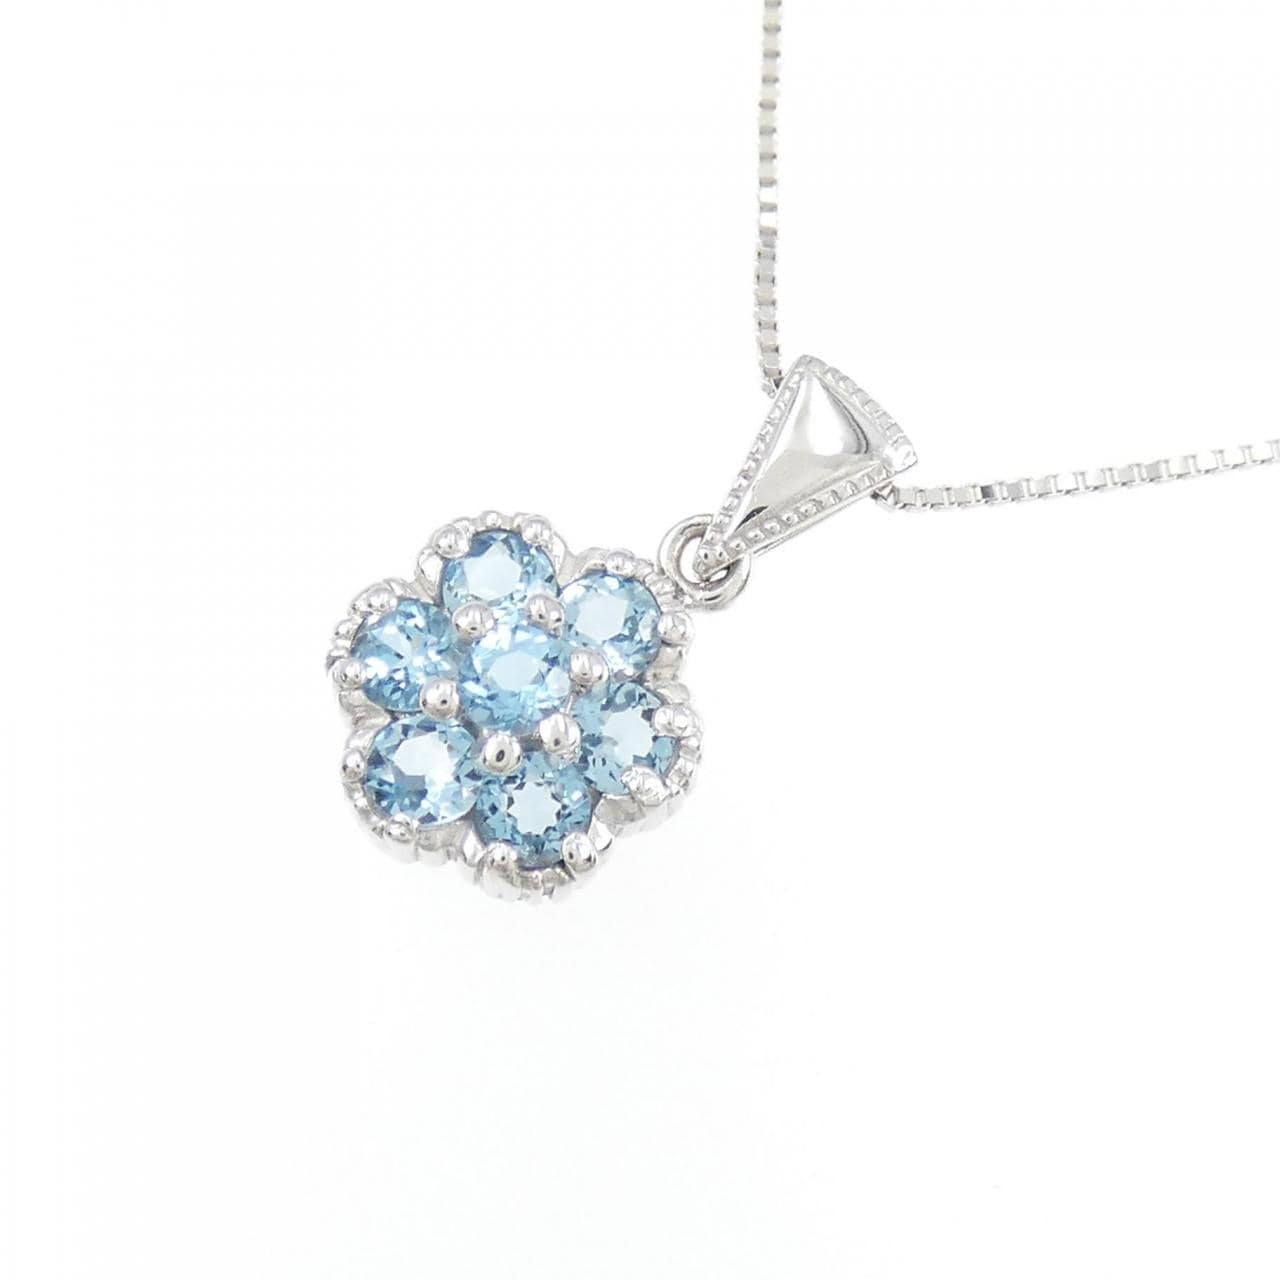 K18WG blue Topaz necklace